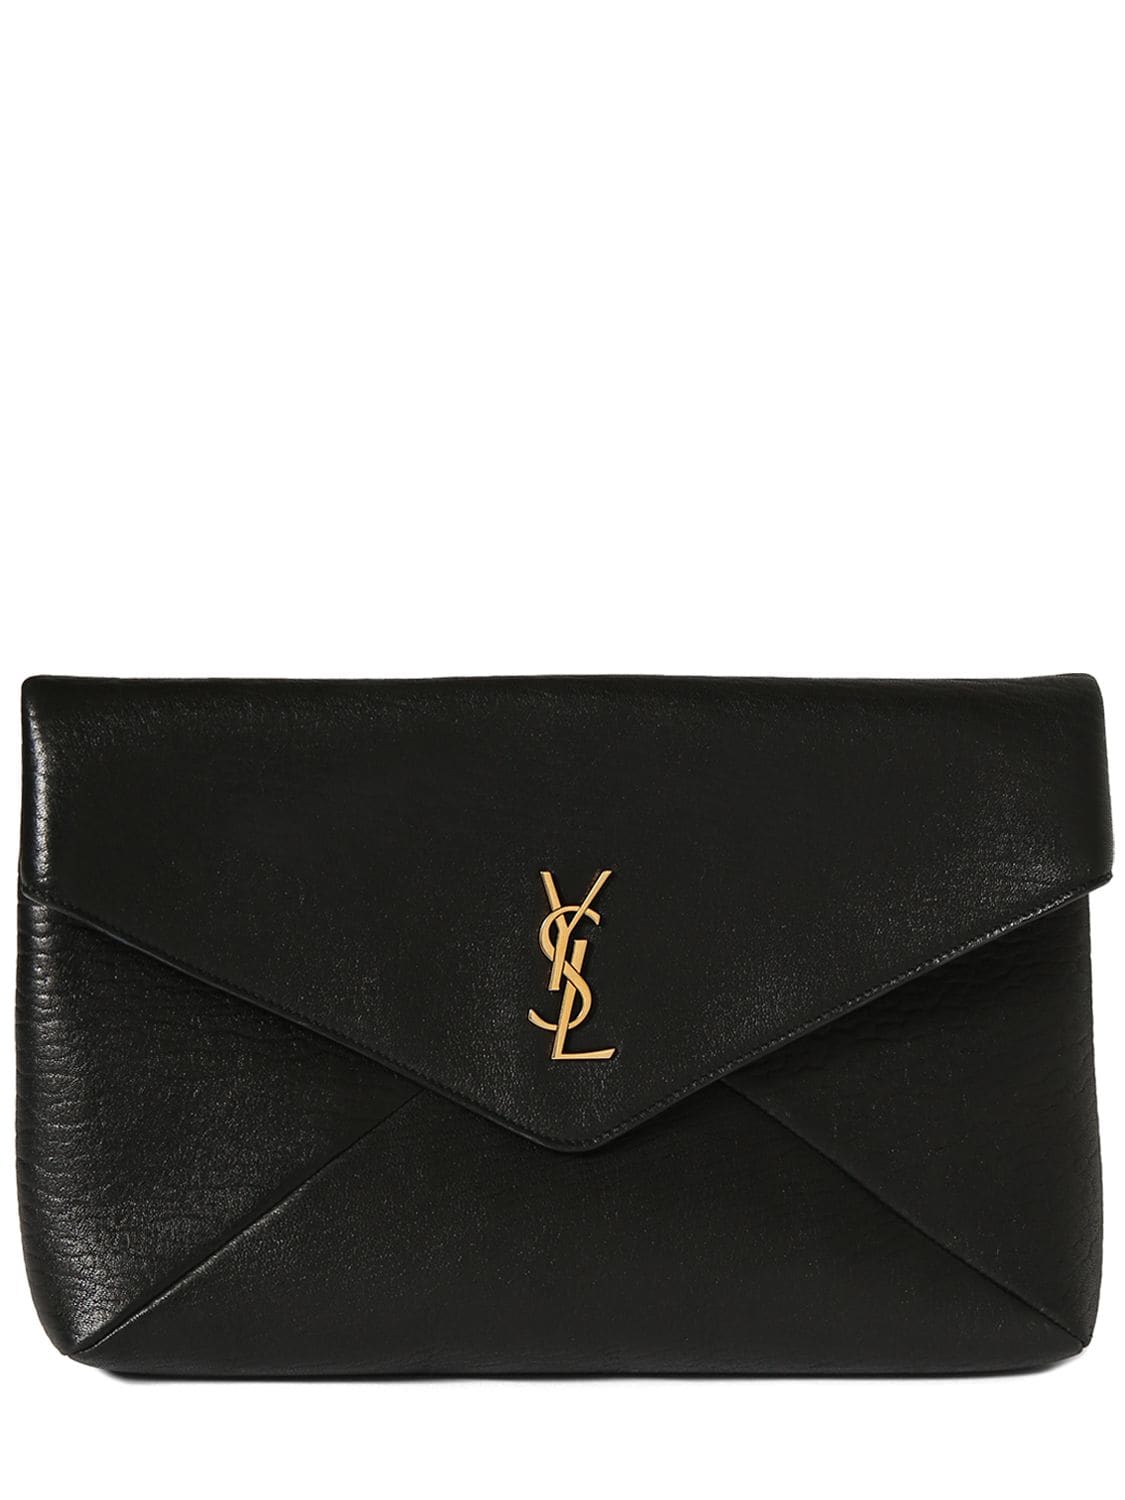 Saint Laurent Large Cassandre Leather Envelope Pouch In Black